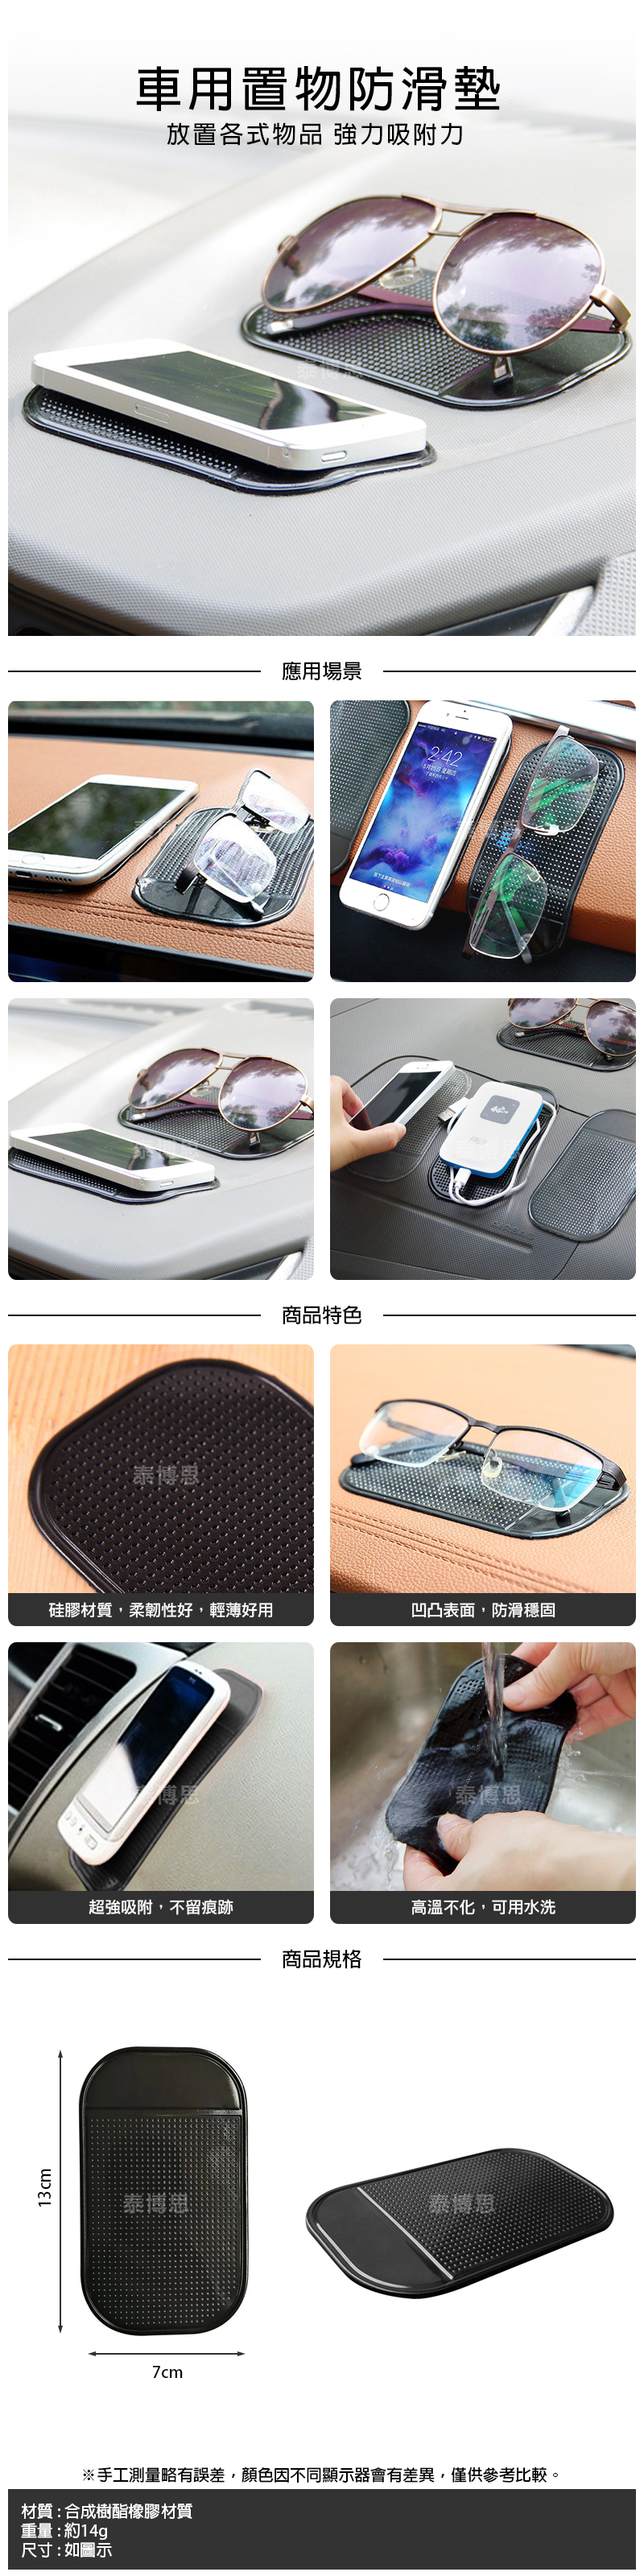 【泰博思】汽車手機防滑墊 車用矽膠止滑墊 車內手機黏貼墊【G0014】